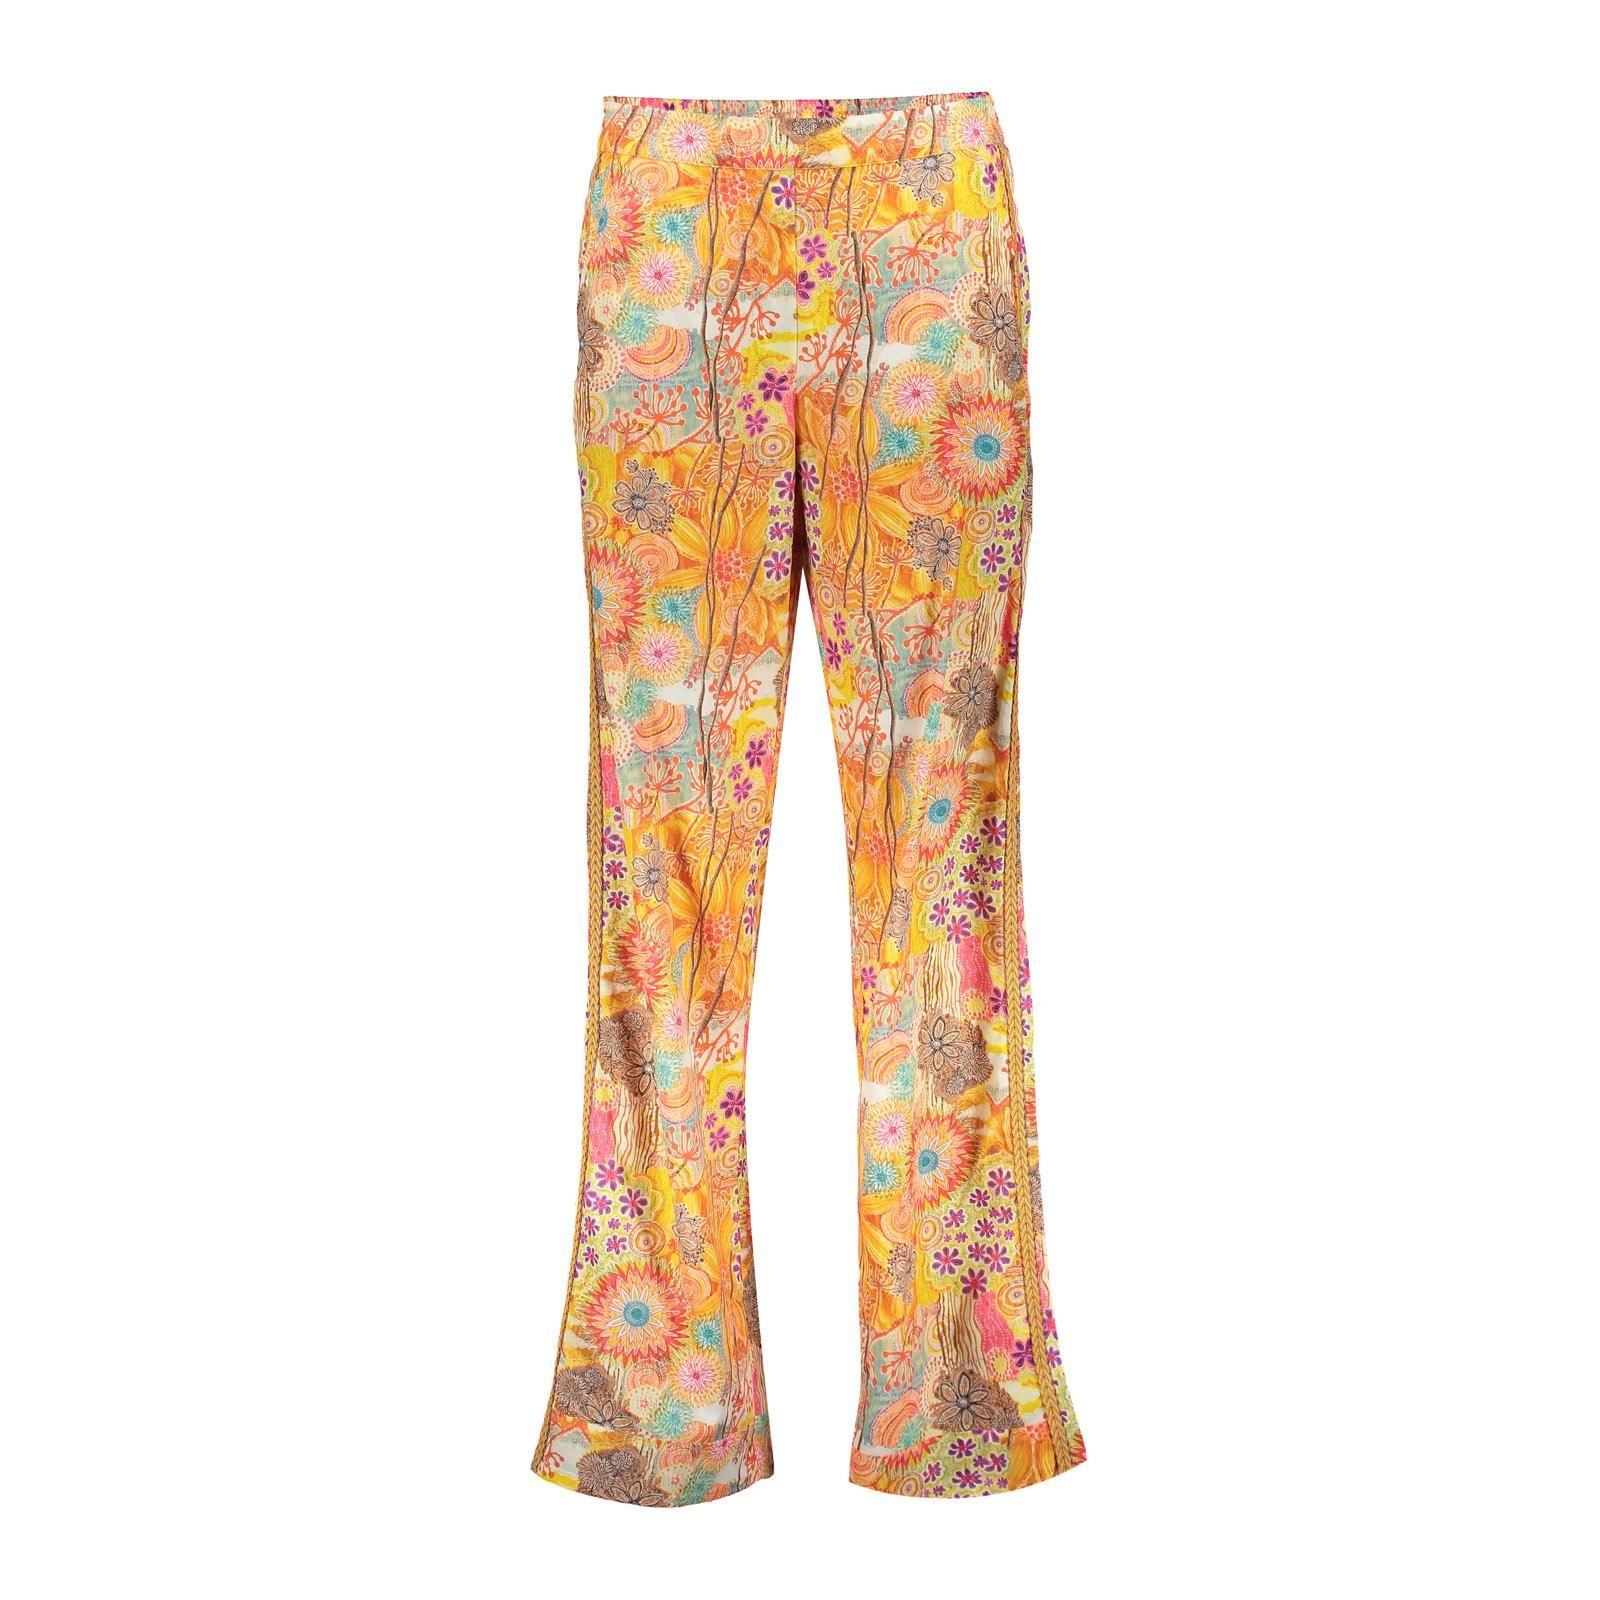 geisha Pants multicolor flowers 250 orange/pink multi 00104212-EKA26013800000002